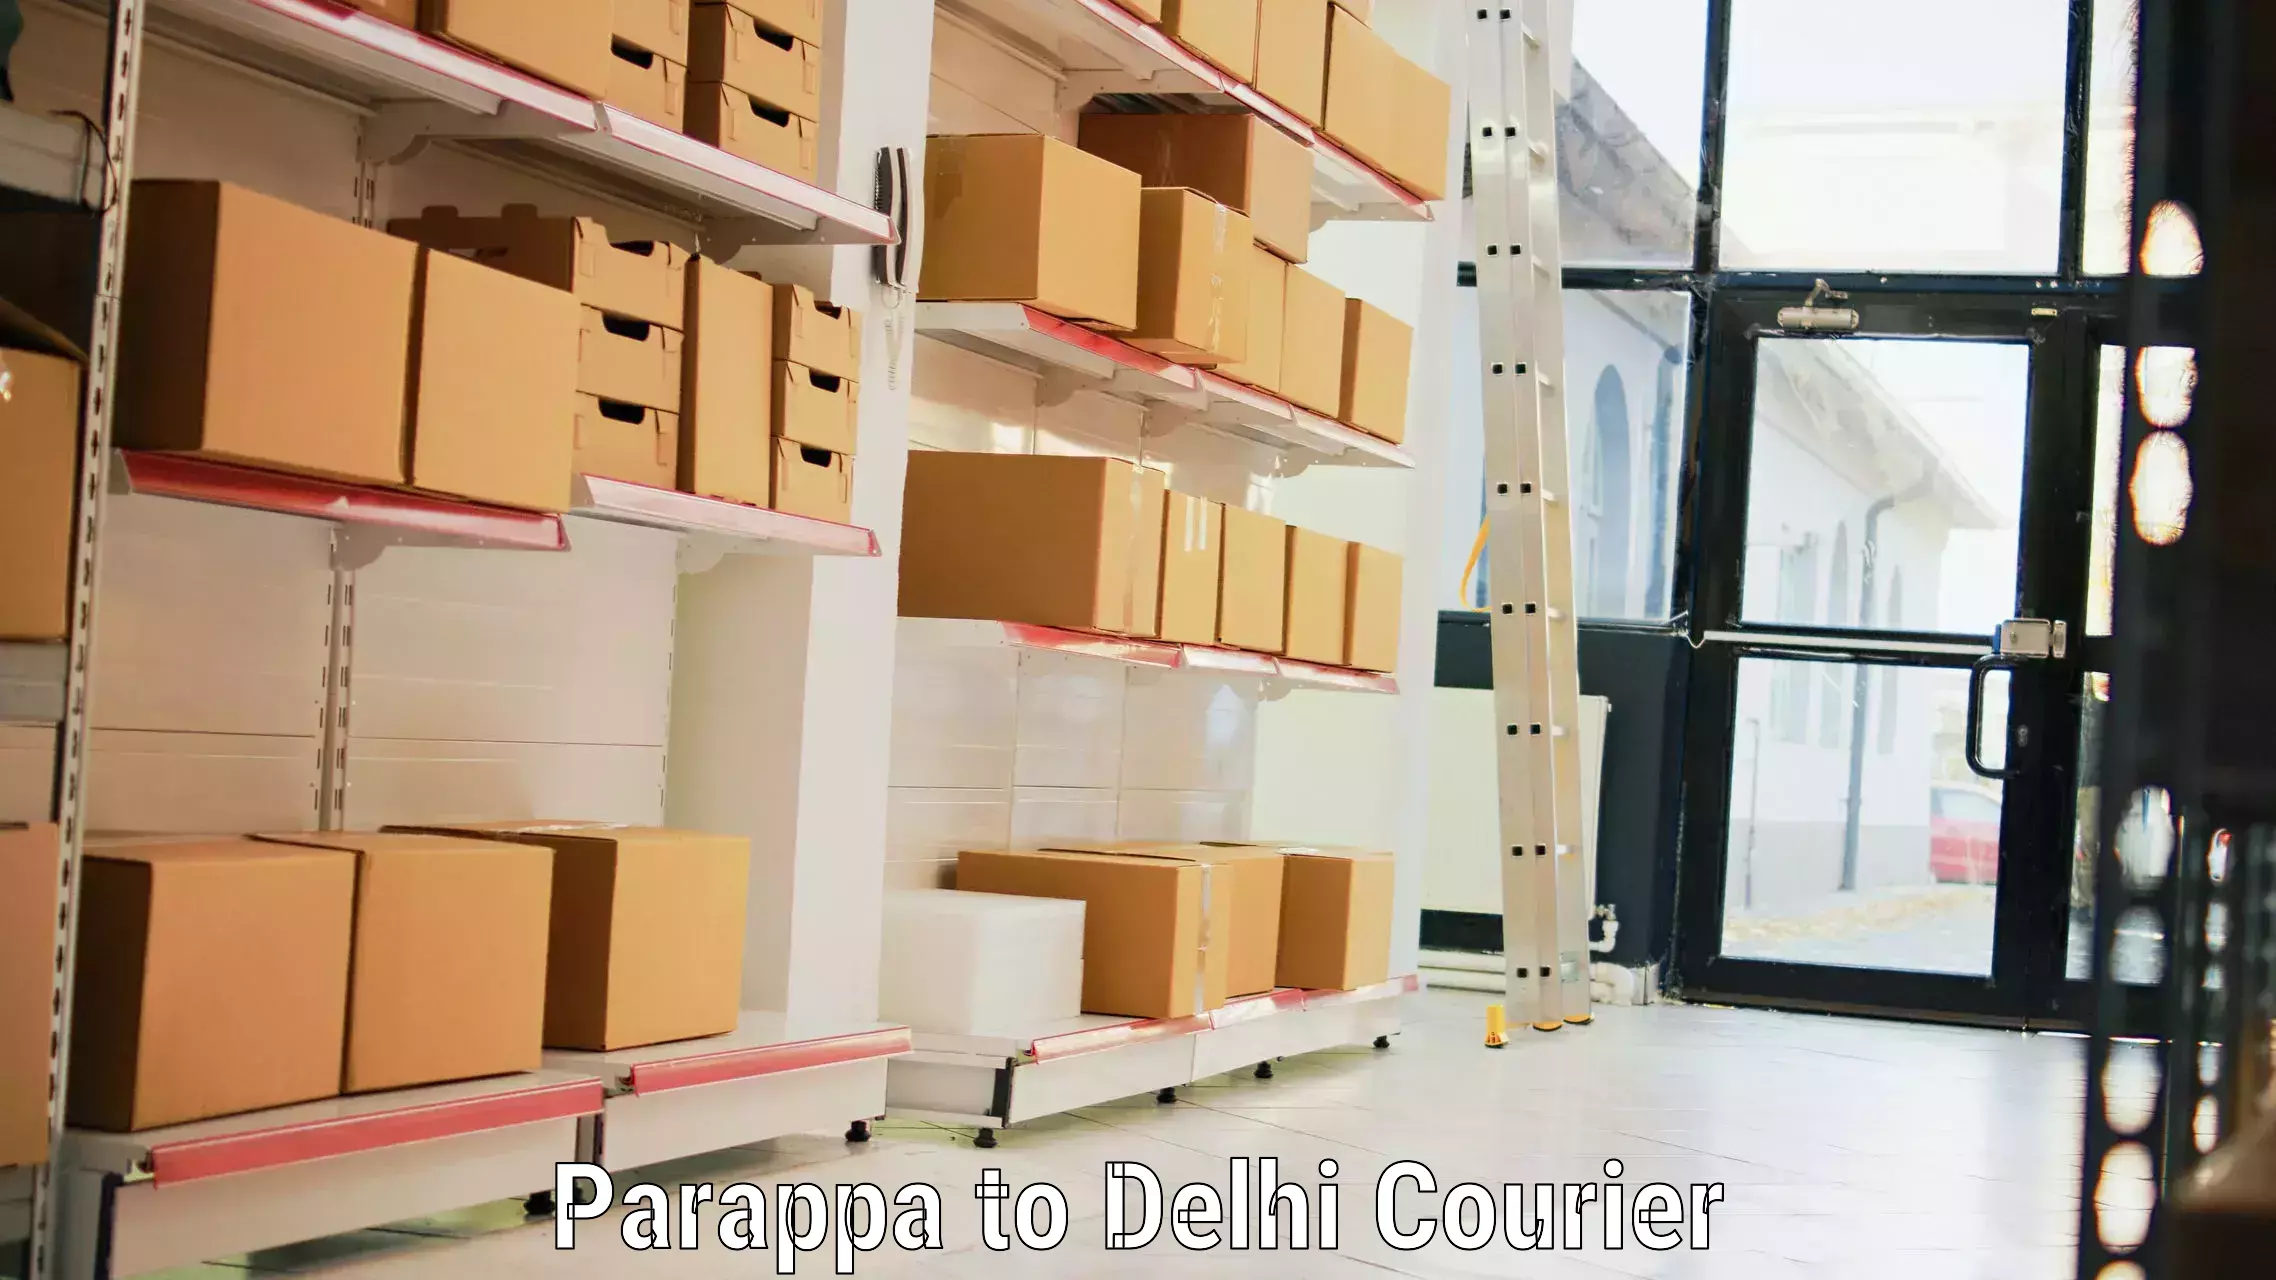 Door-to-door baggage service Parappa to IIT Delhi